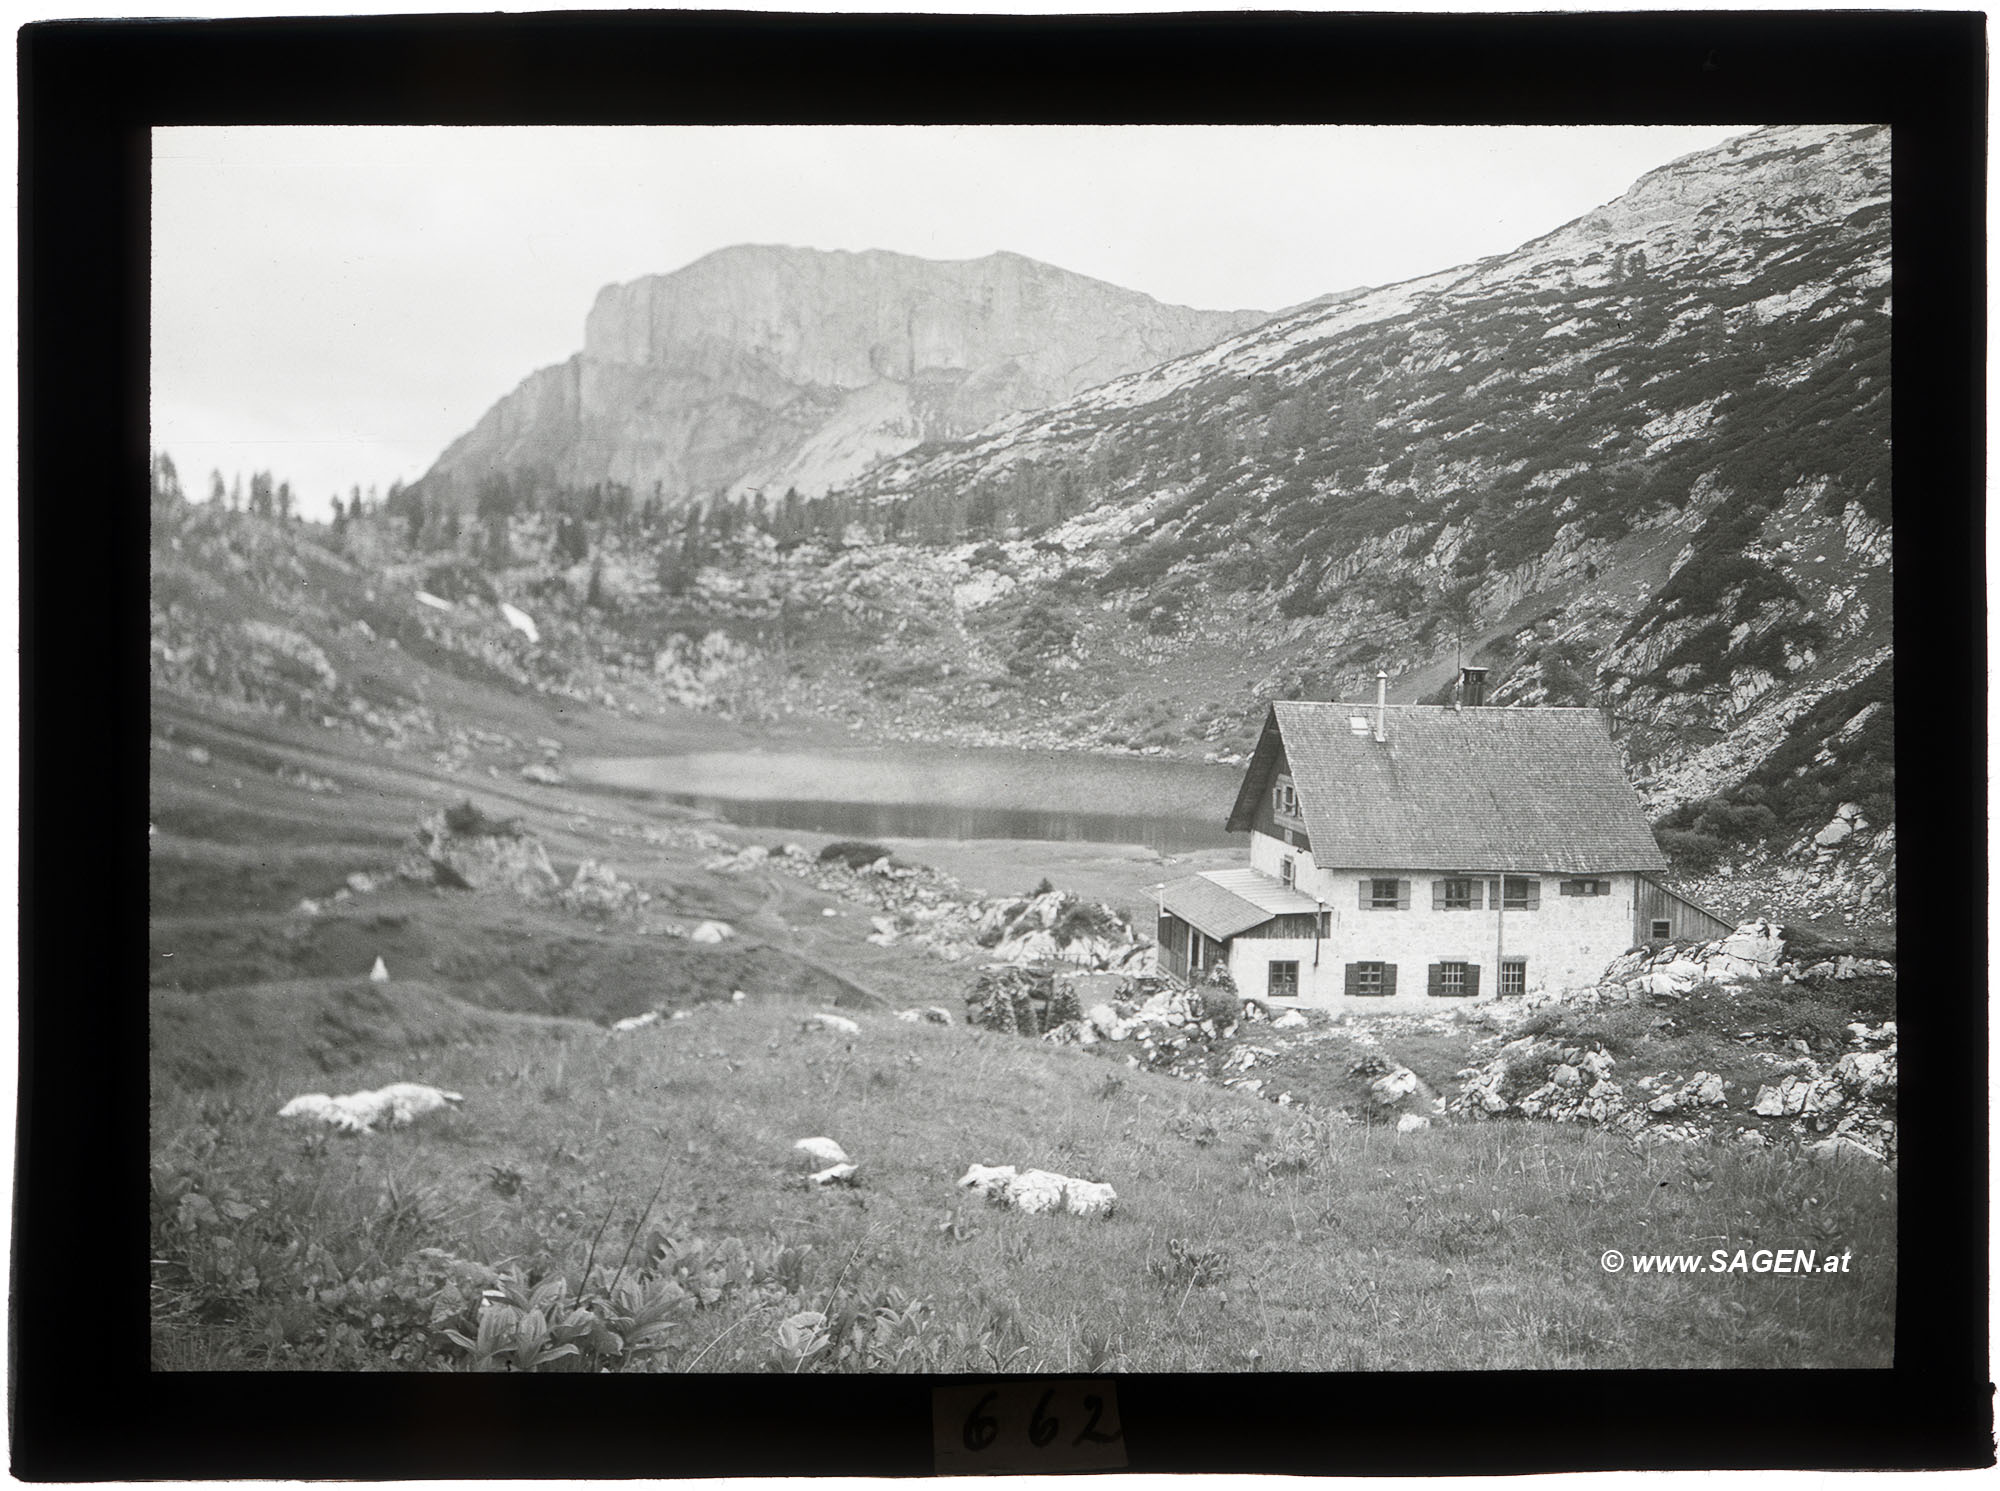 Pühringerhütte, Totes Gebirge